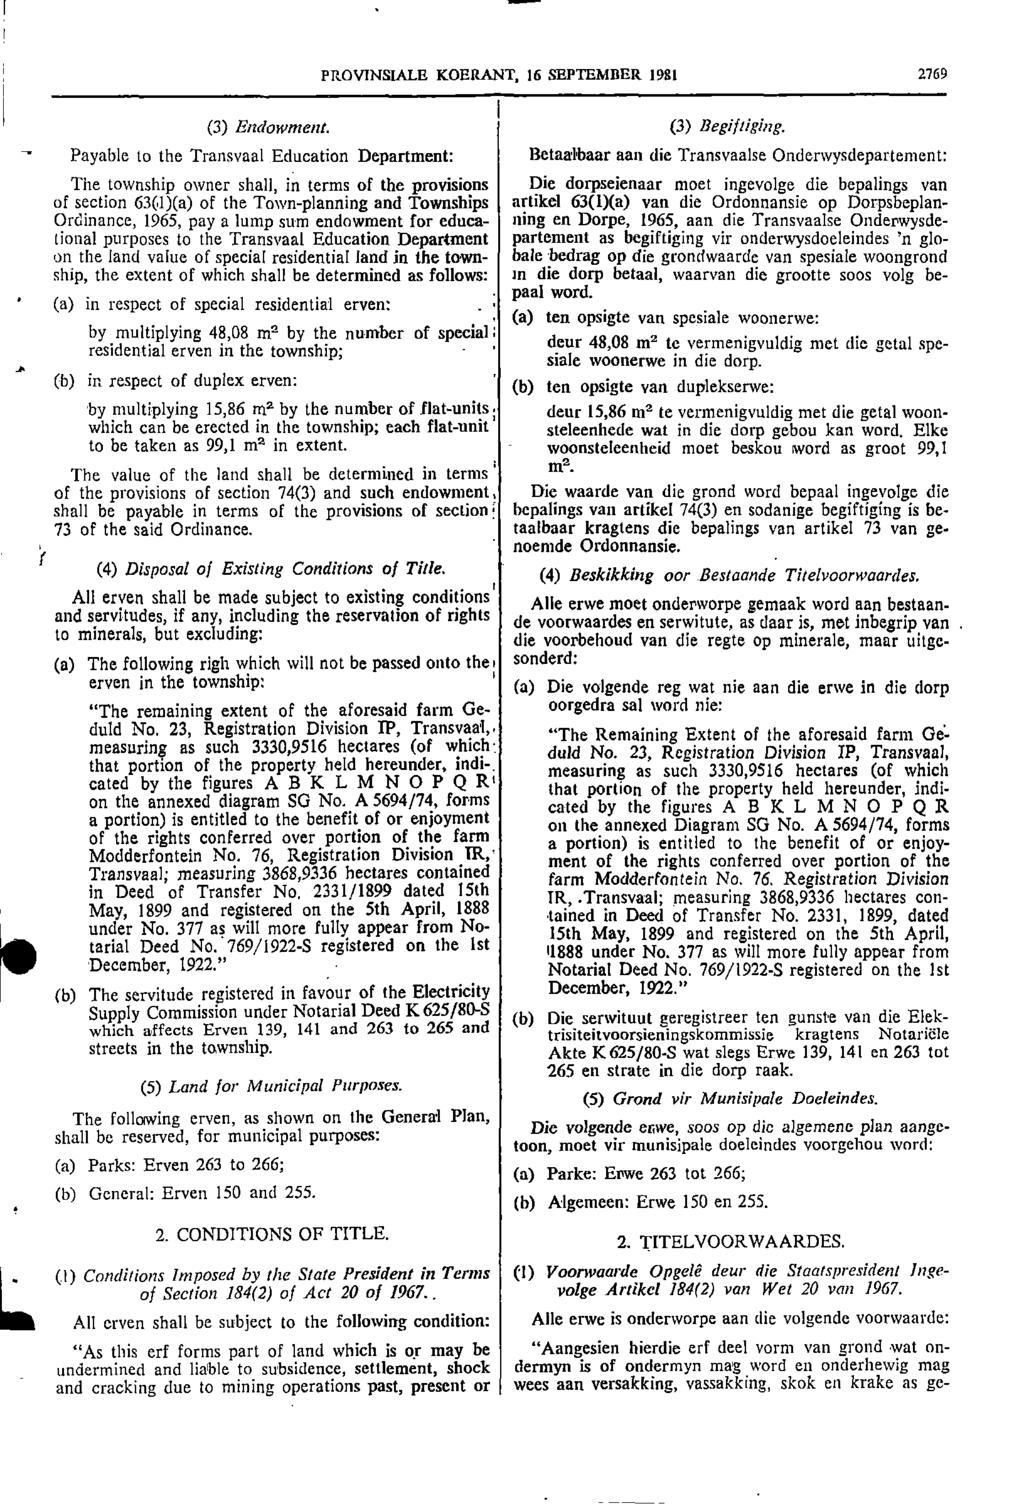 1 I PROVINSIALE KOERANT, 16 SEPTEMBER 1981 2769 J 1 (3) Endowment Payable to the Transvaal Education Department: I (3) Begiftiging Betaalbaar aan die Transvaalse Onderwysdepartement: The township